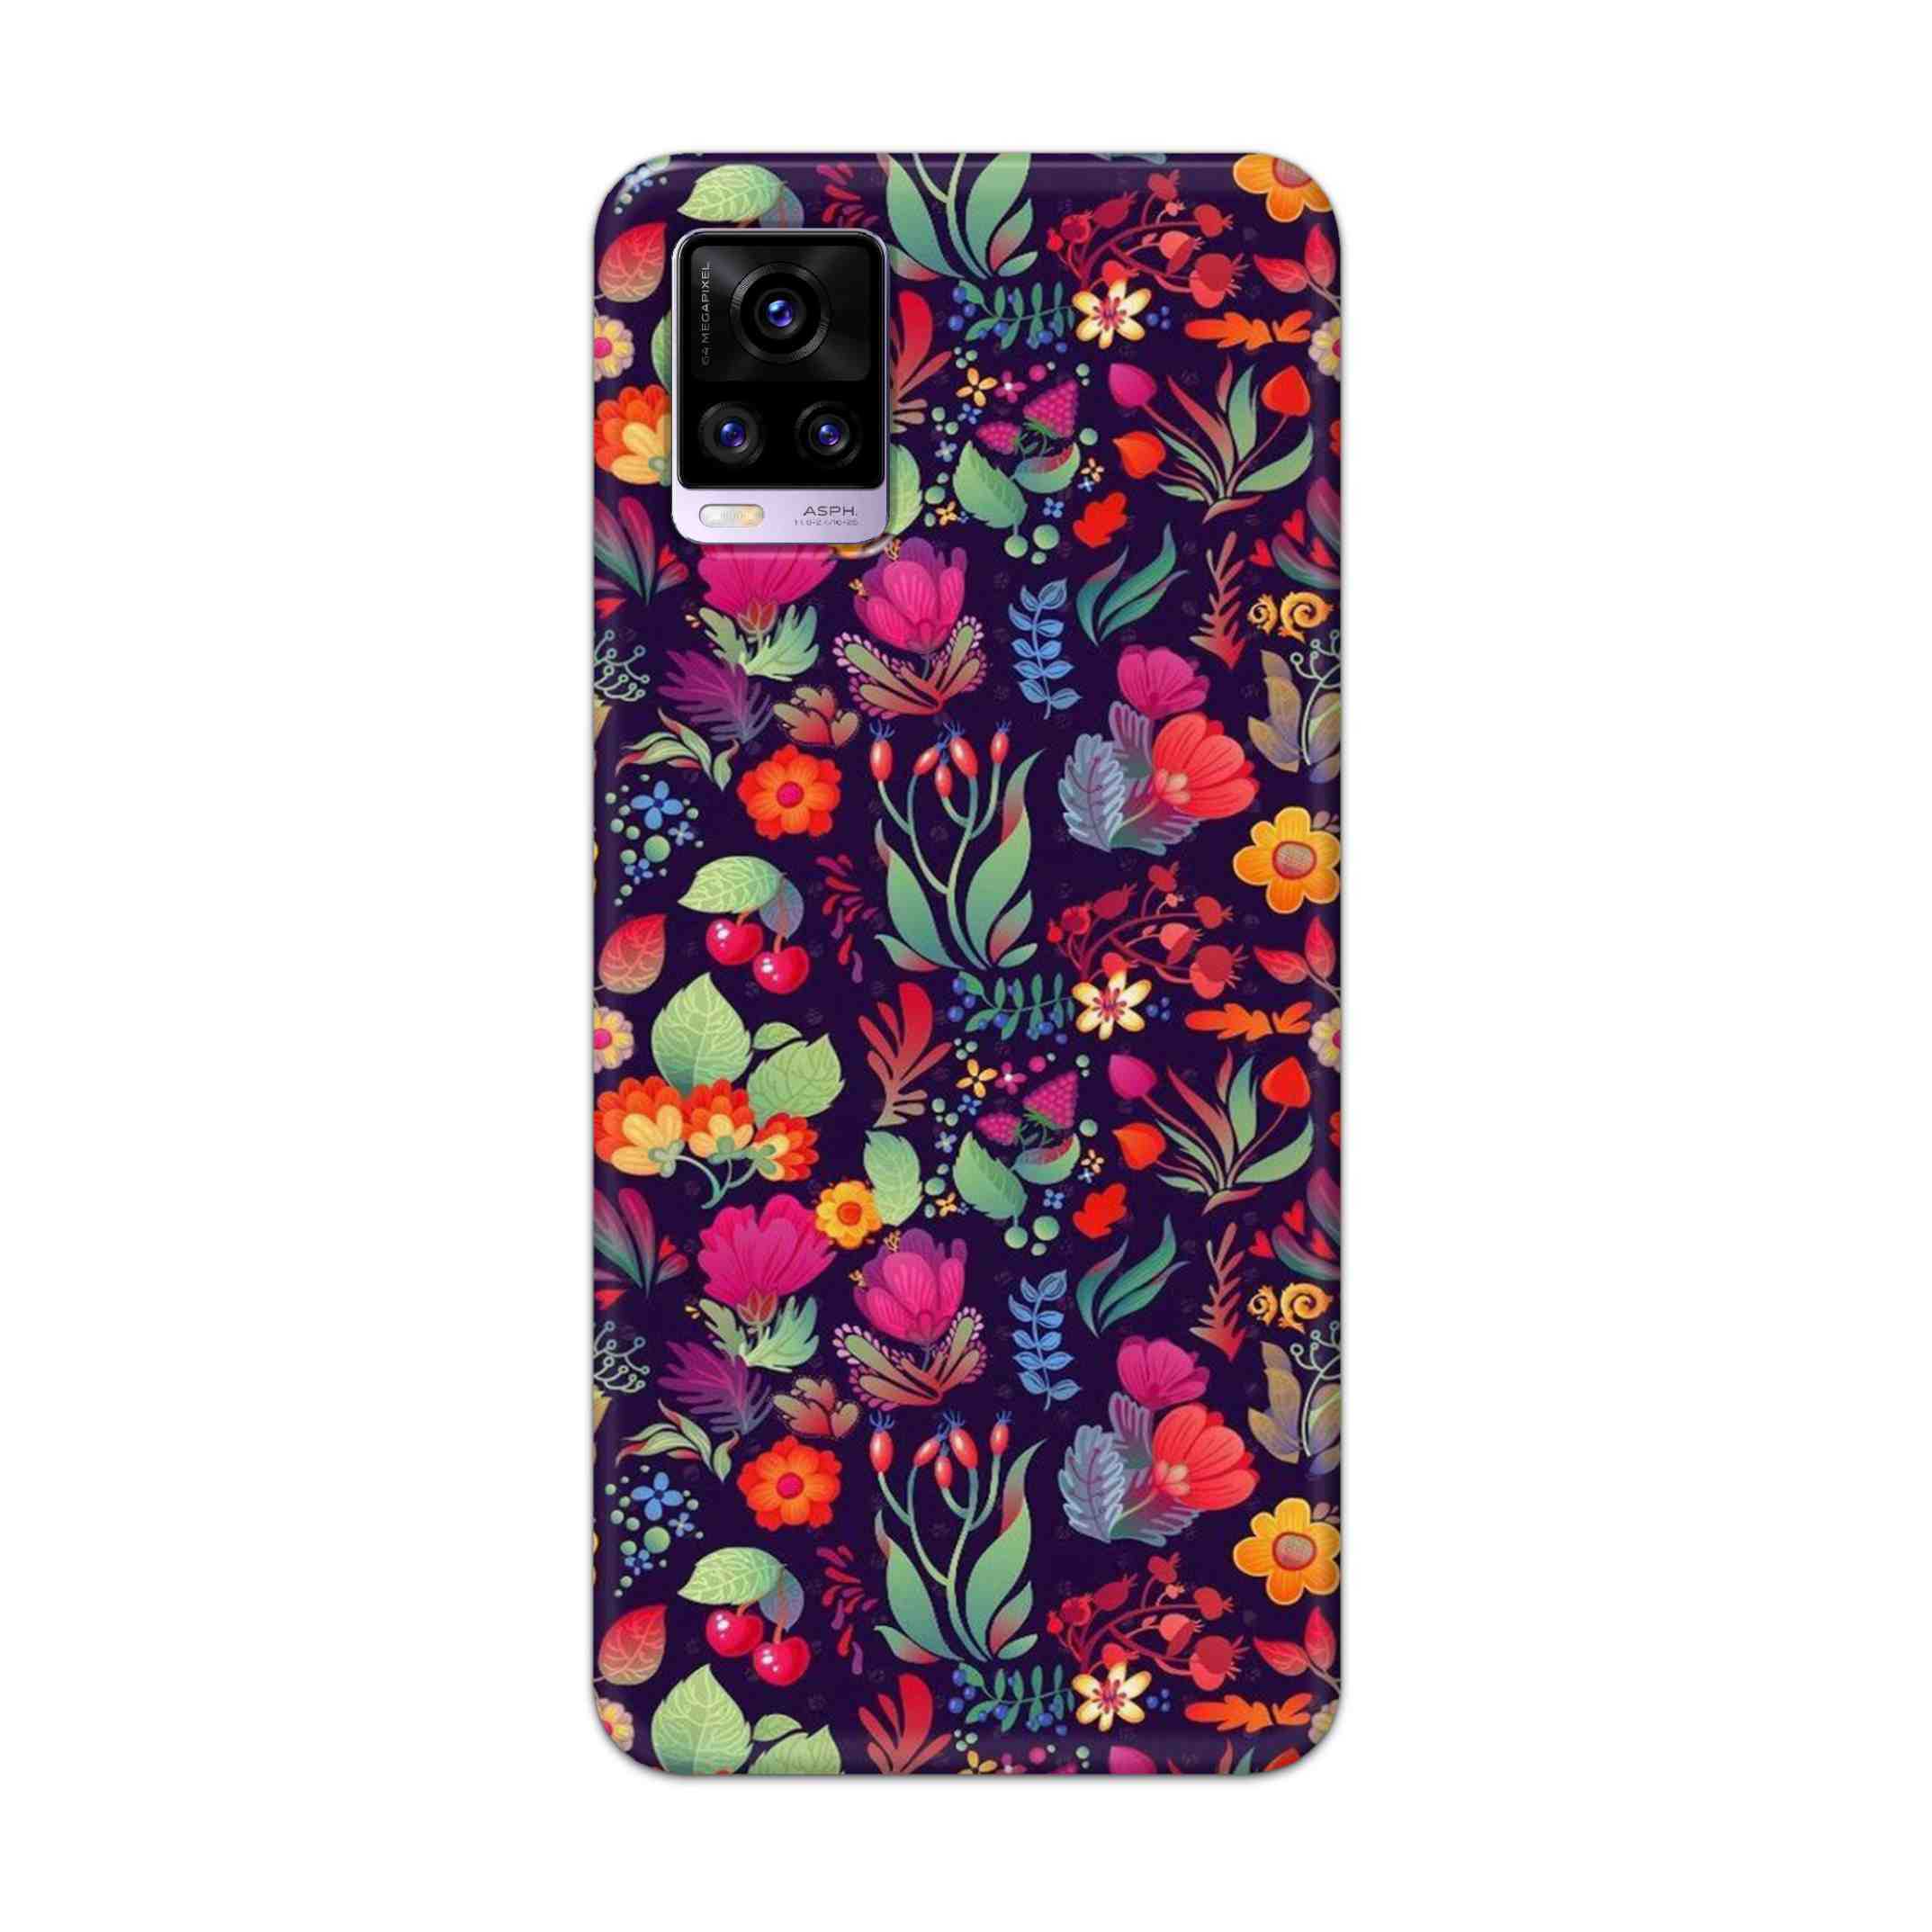 Buy Fruits Flower Hard Back Mobile Phone Case Cover For Vivo V20 Online